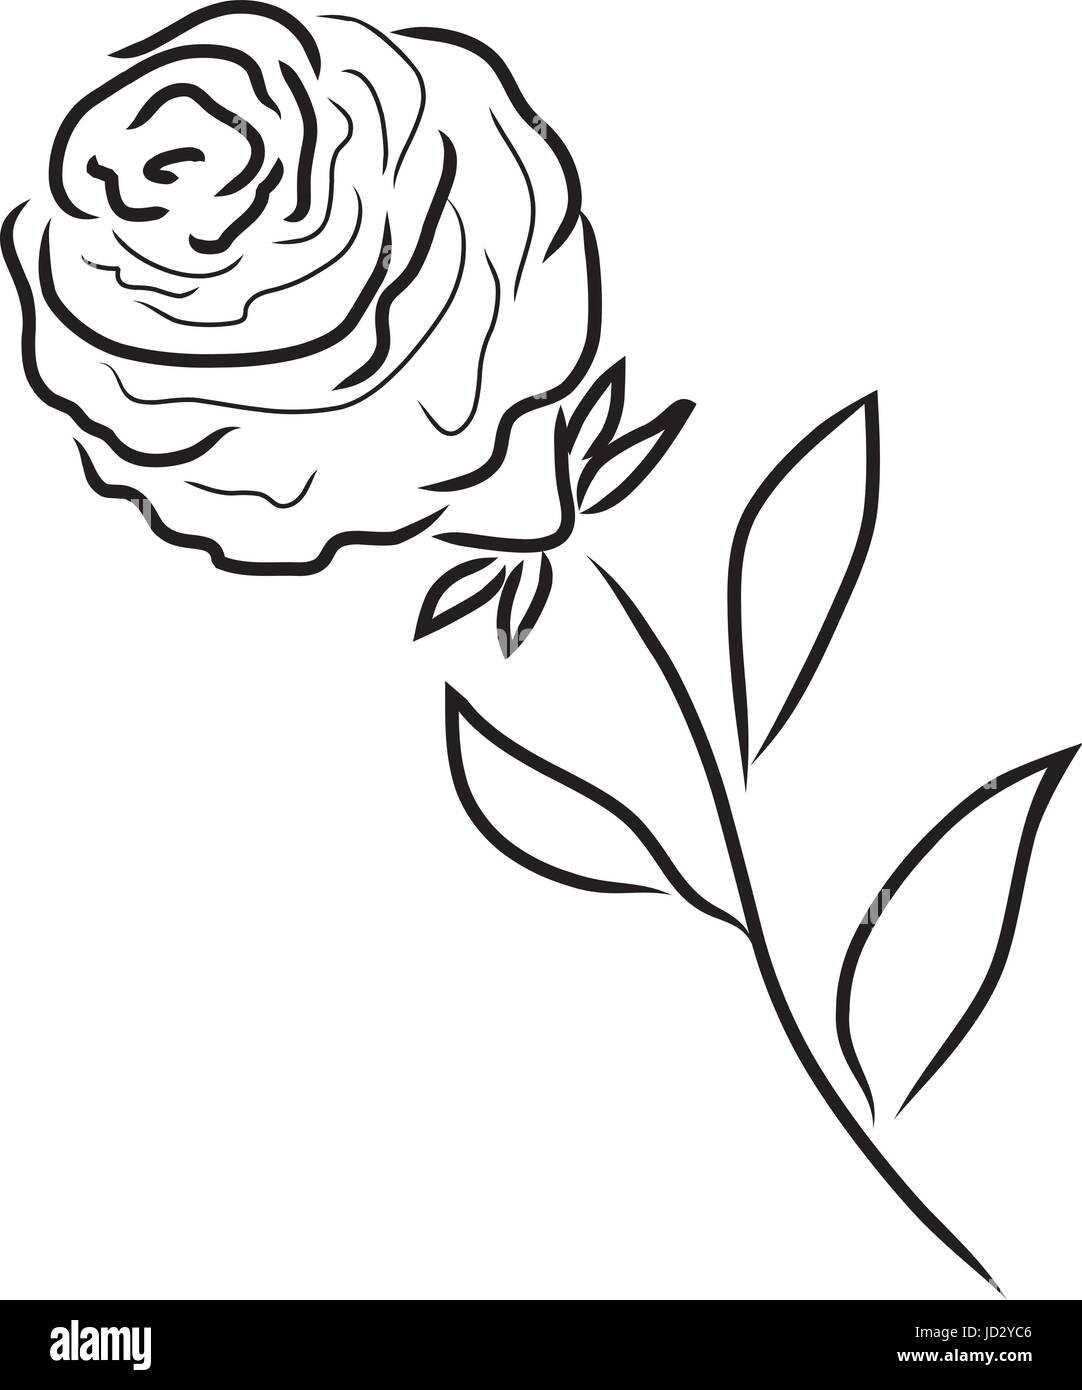 Vektor-Illustration einer rose Silhouette isoliert Stock Vektor